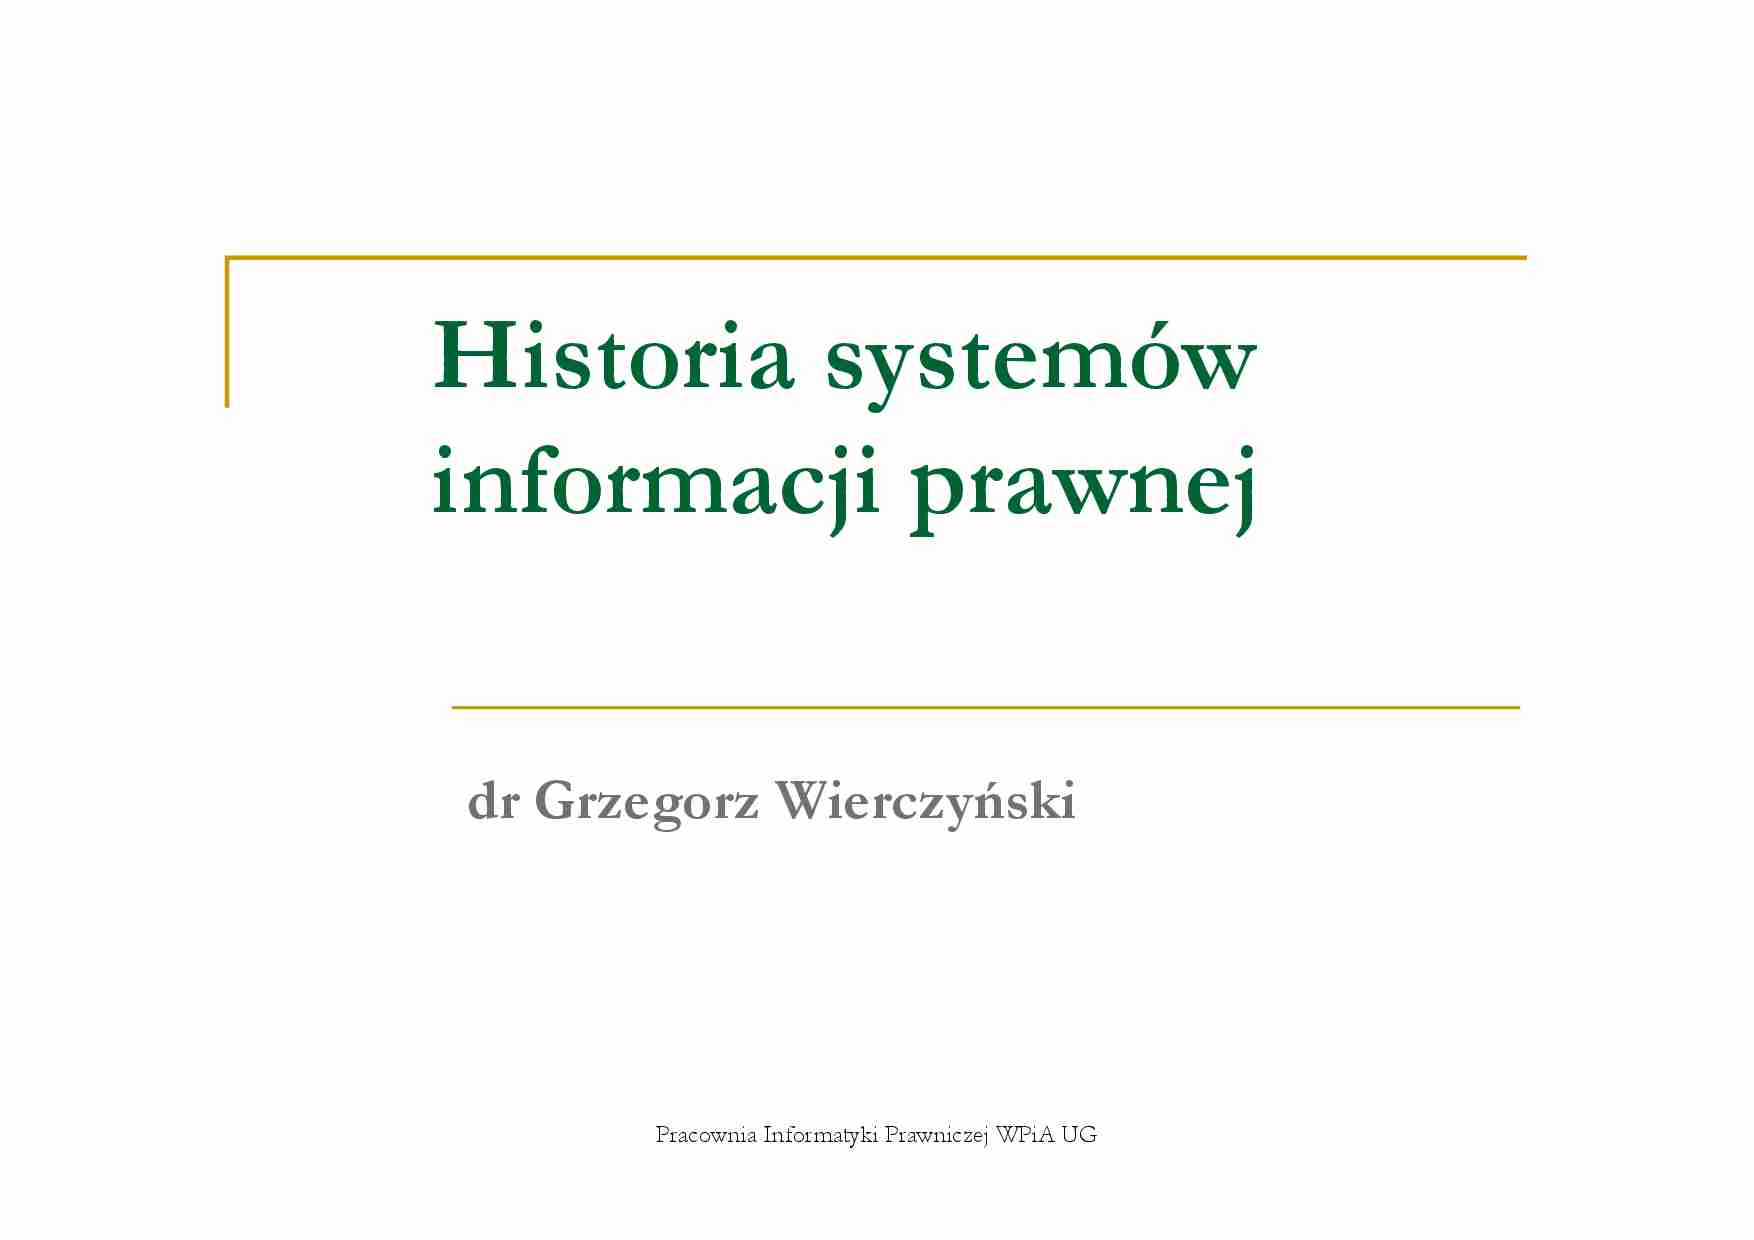 Historia systemow informacji prawnej - omówienie - strona 1